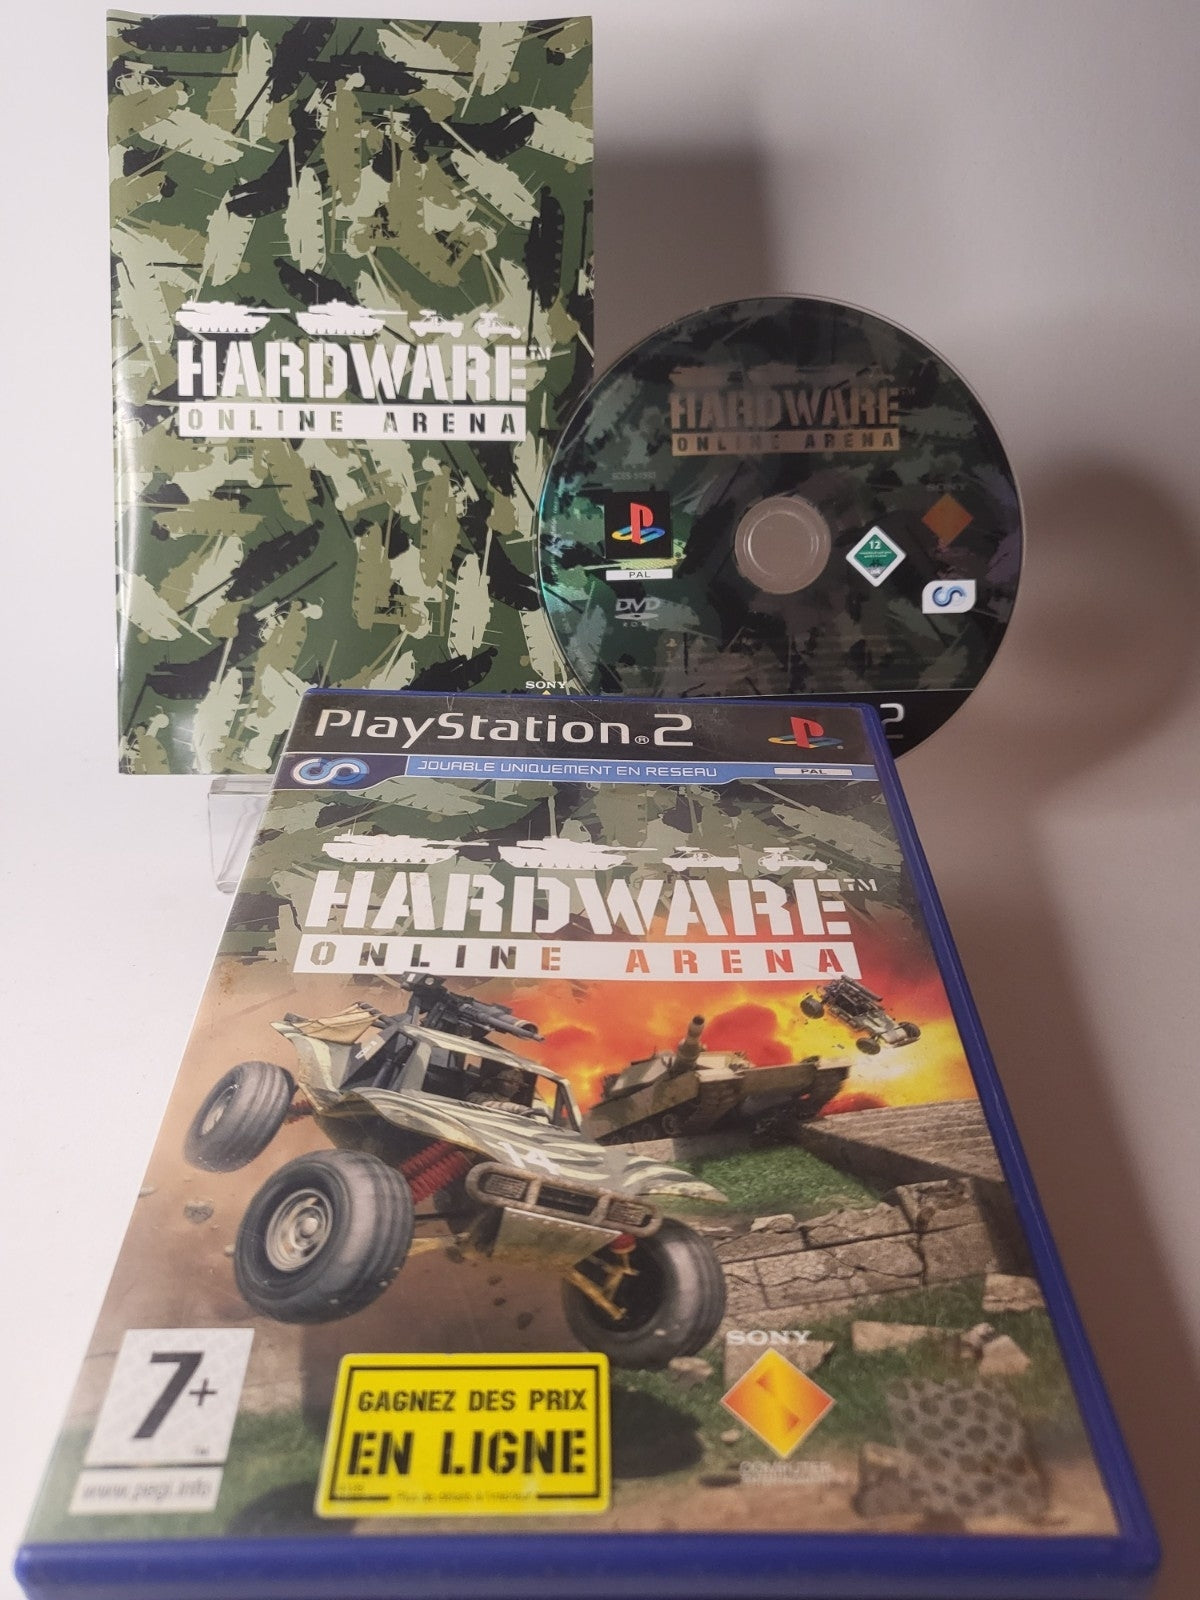 Hardware: Online Arena Playstation 2